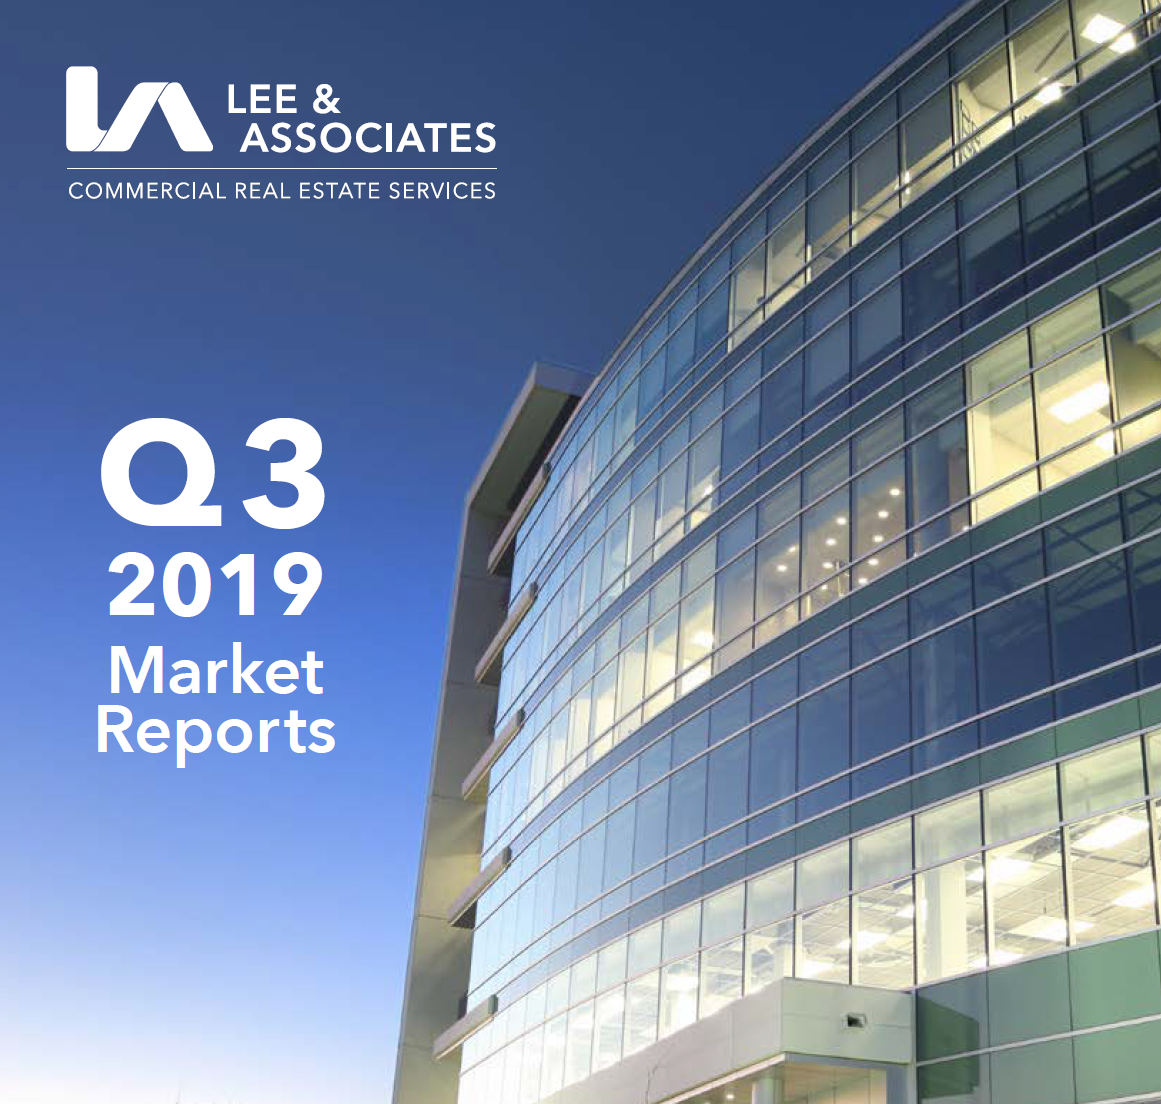 Q3 2019 Market Reports